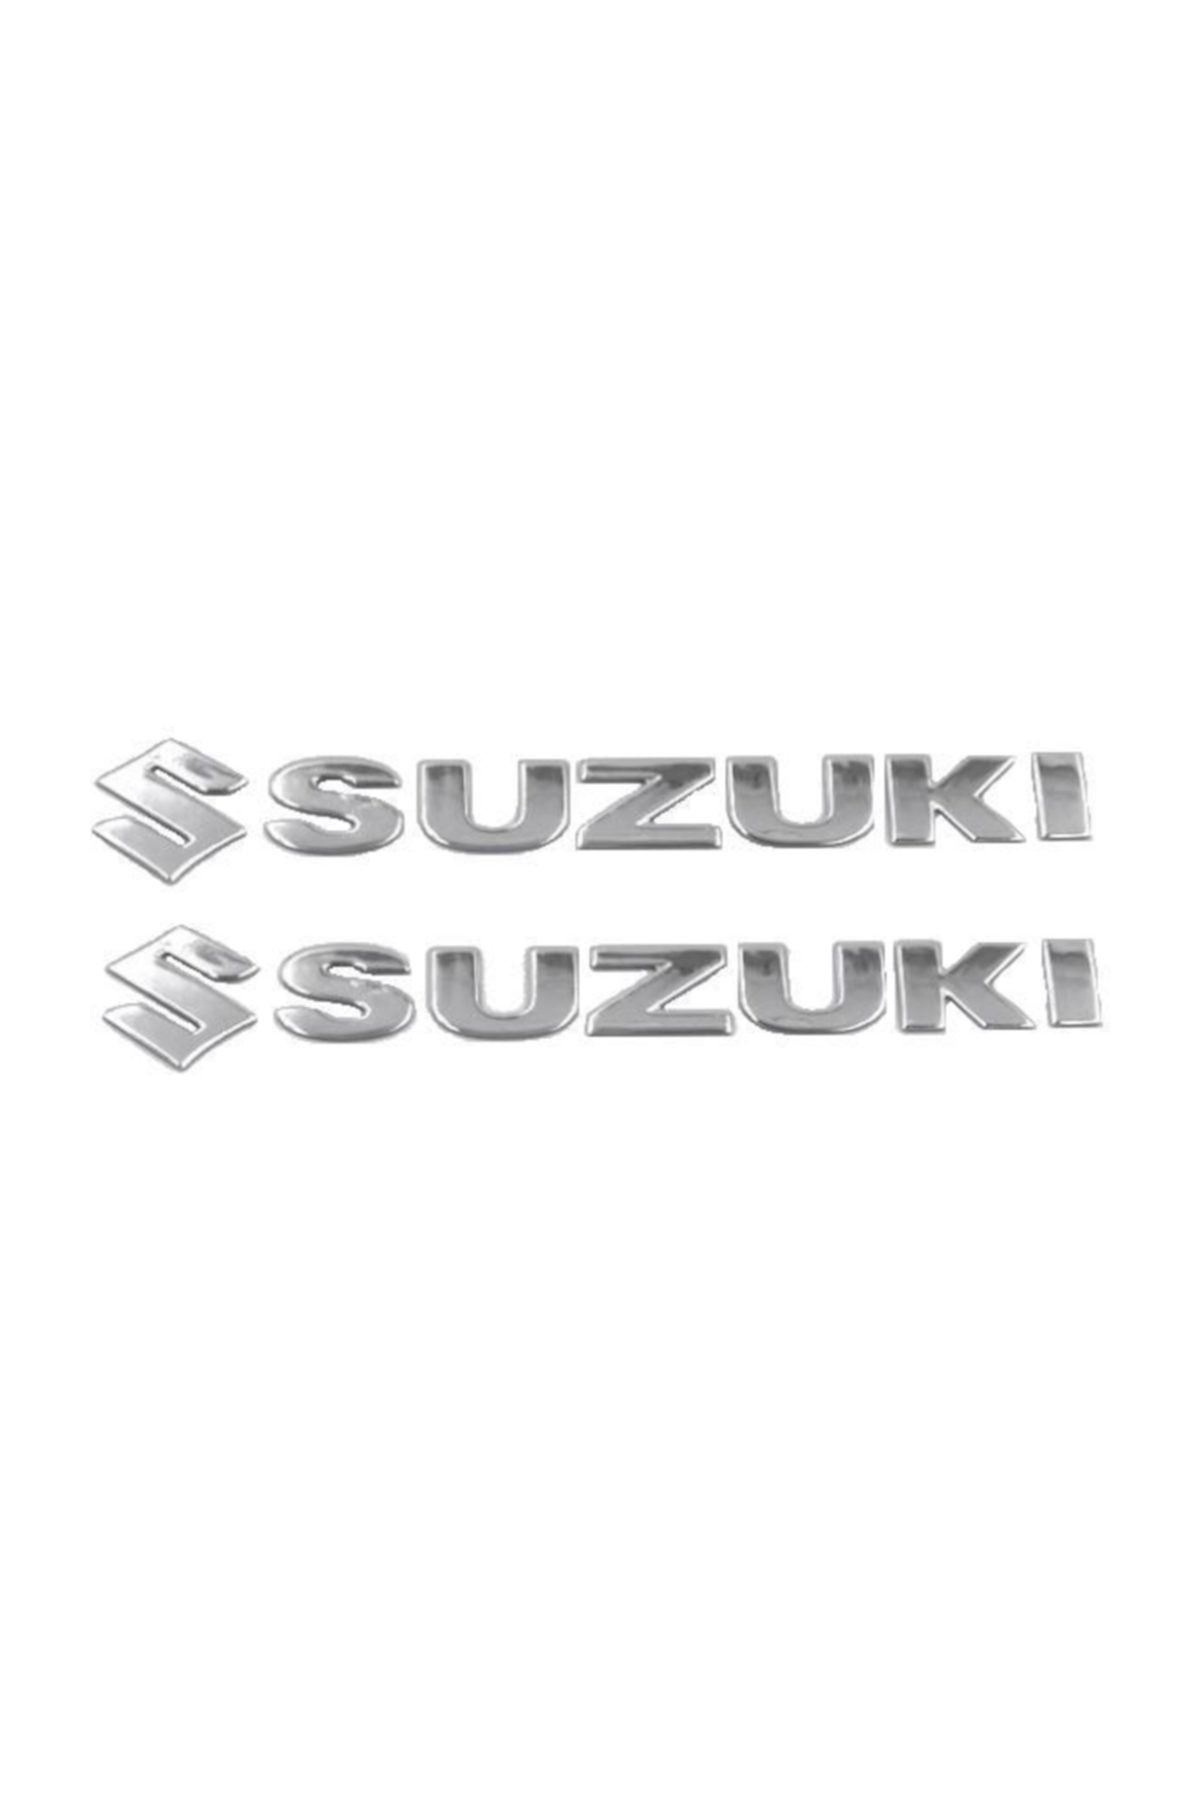 Knmaster Suzuki Kabartmalı Yapıştırma Etiket Sticker Gümüş